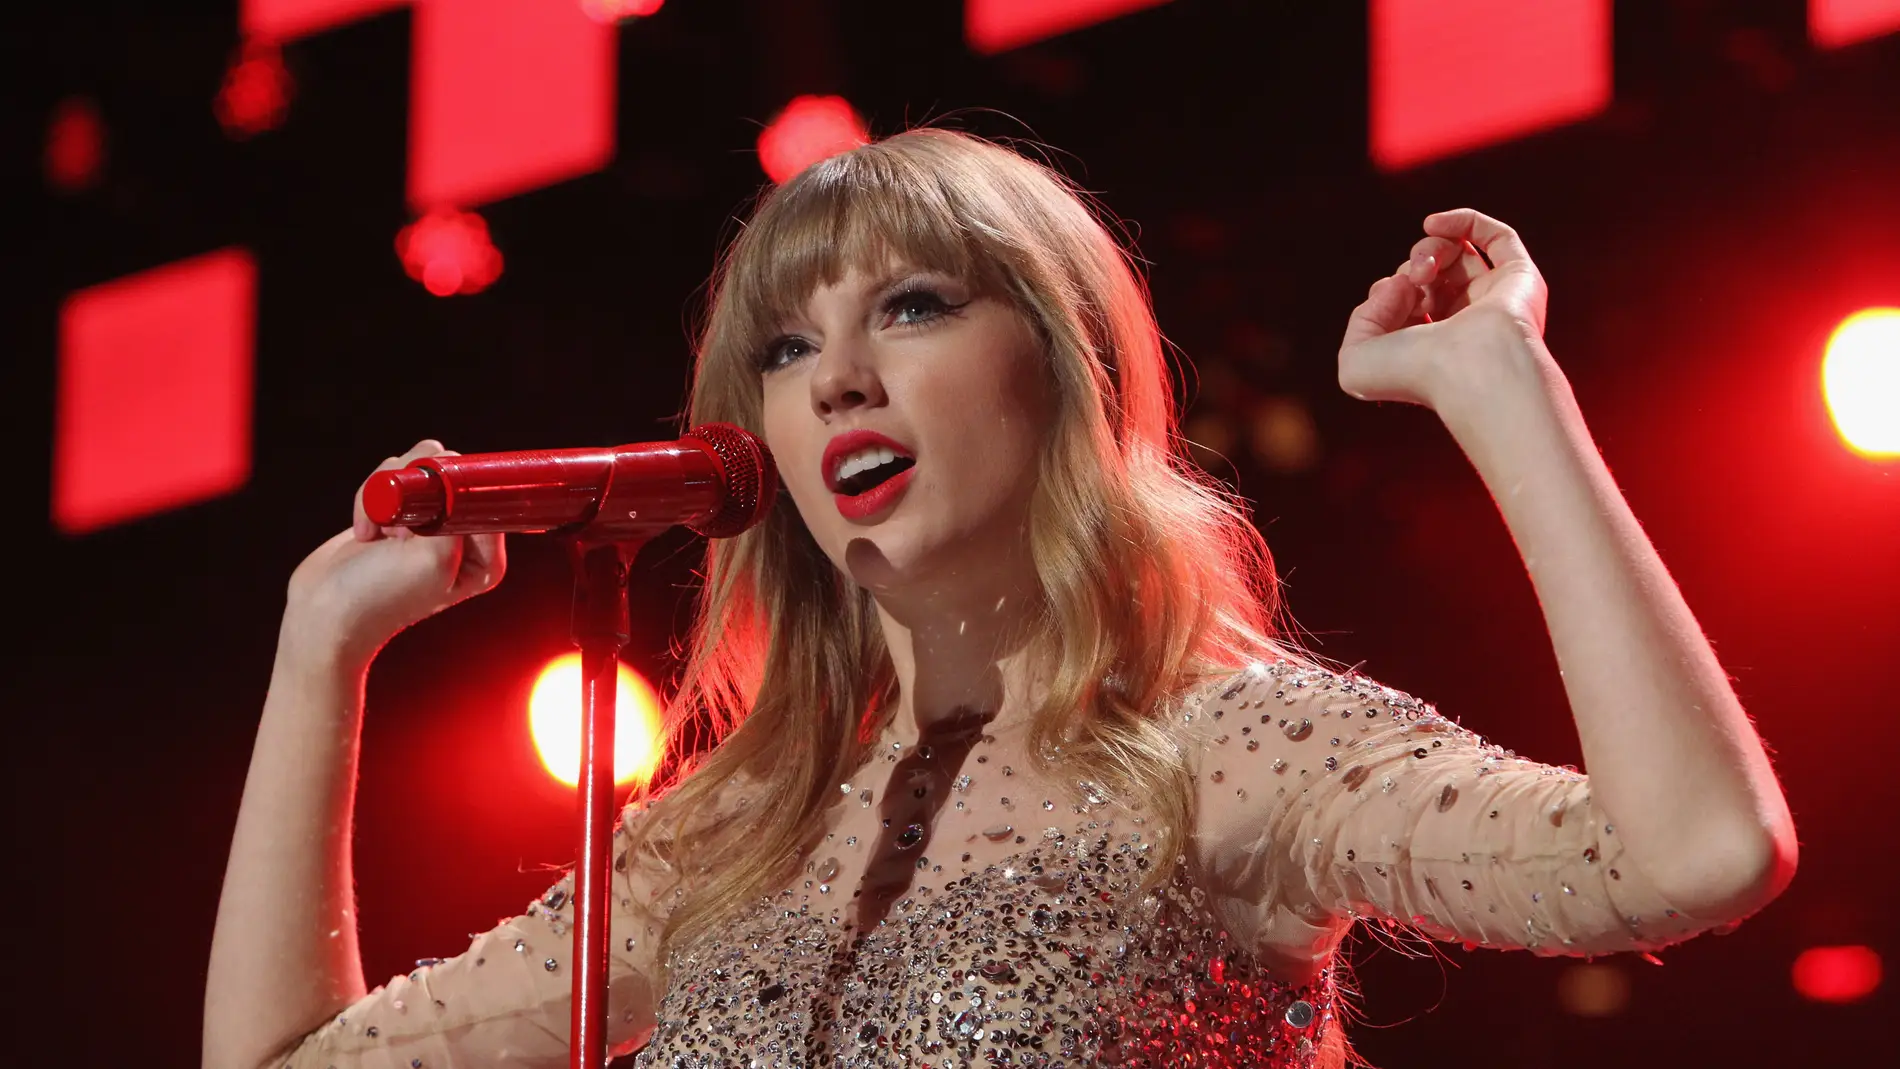 "La letra fue escrita por mi": Taylor Swift responde ante la demanda de plagio por 'Shake It Off'  